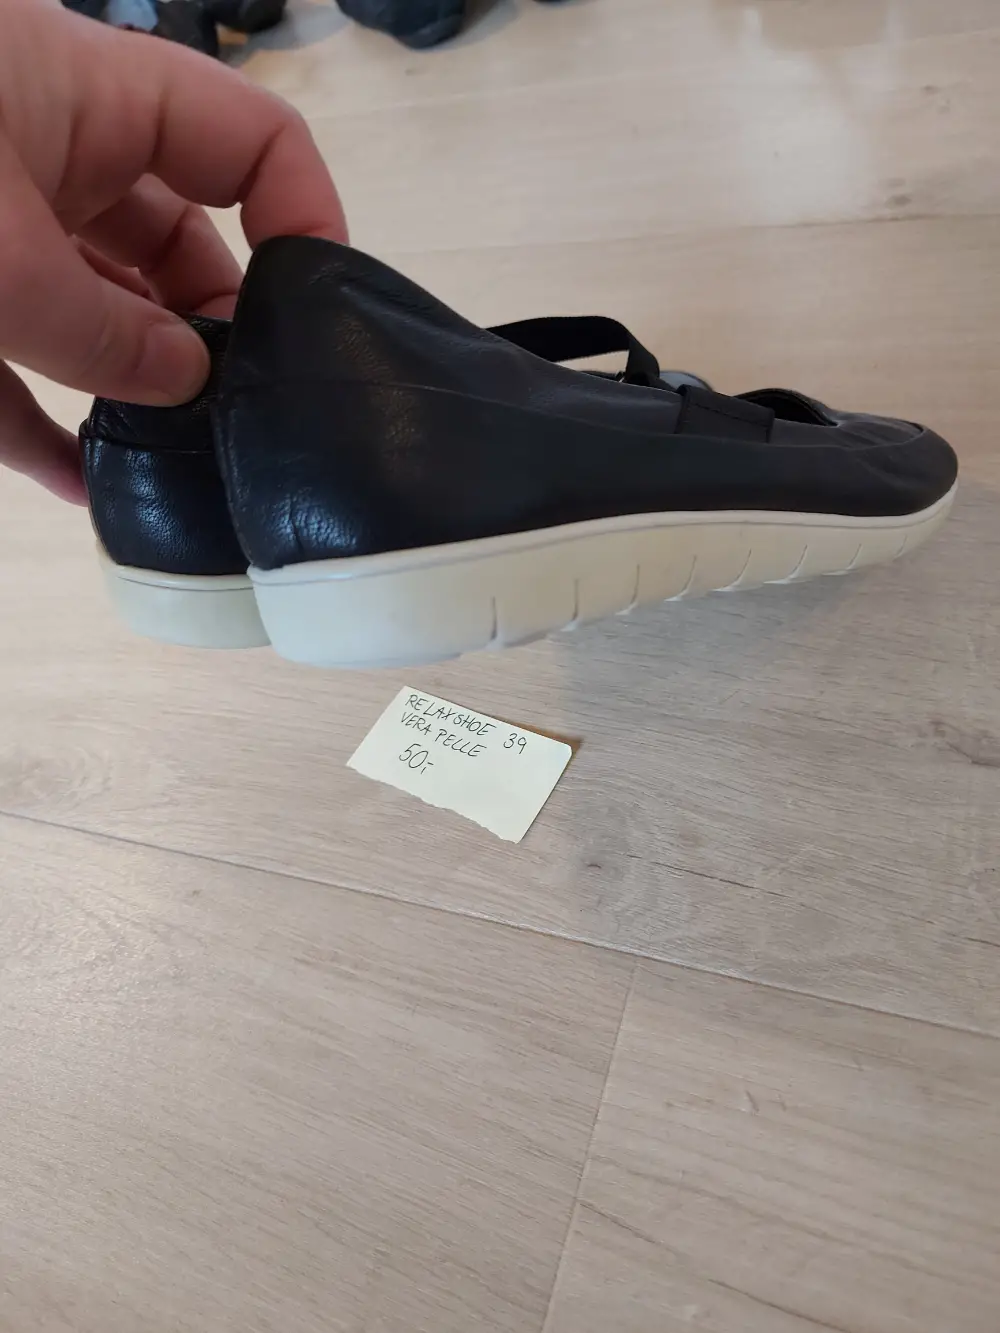 tromme vil beslutte foder Køb Vera pelle Sko sandaler i størrelse 39 af Kate på Reshopper · Shop  secondhand til børn, mor og bolig